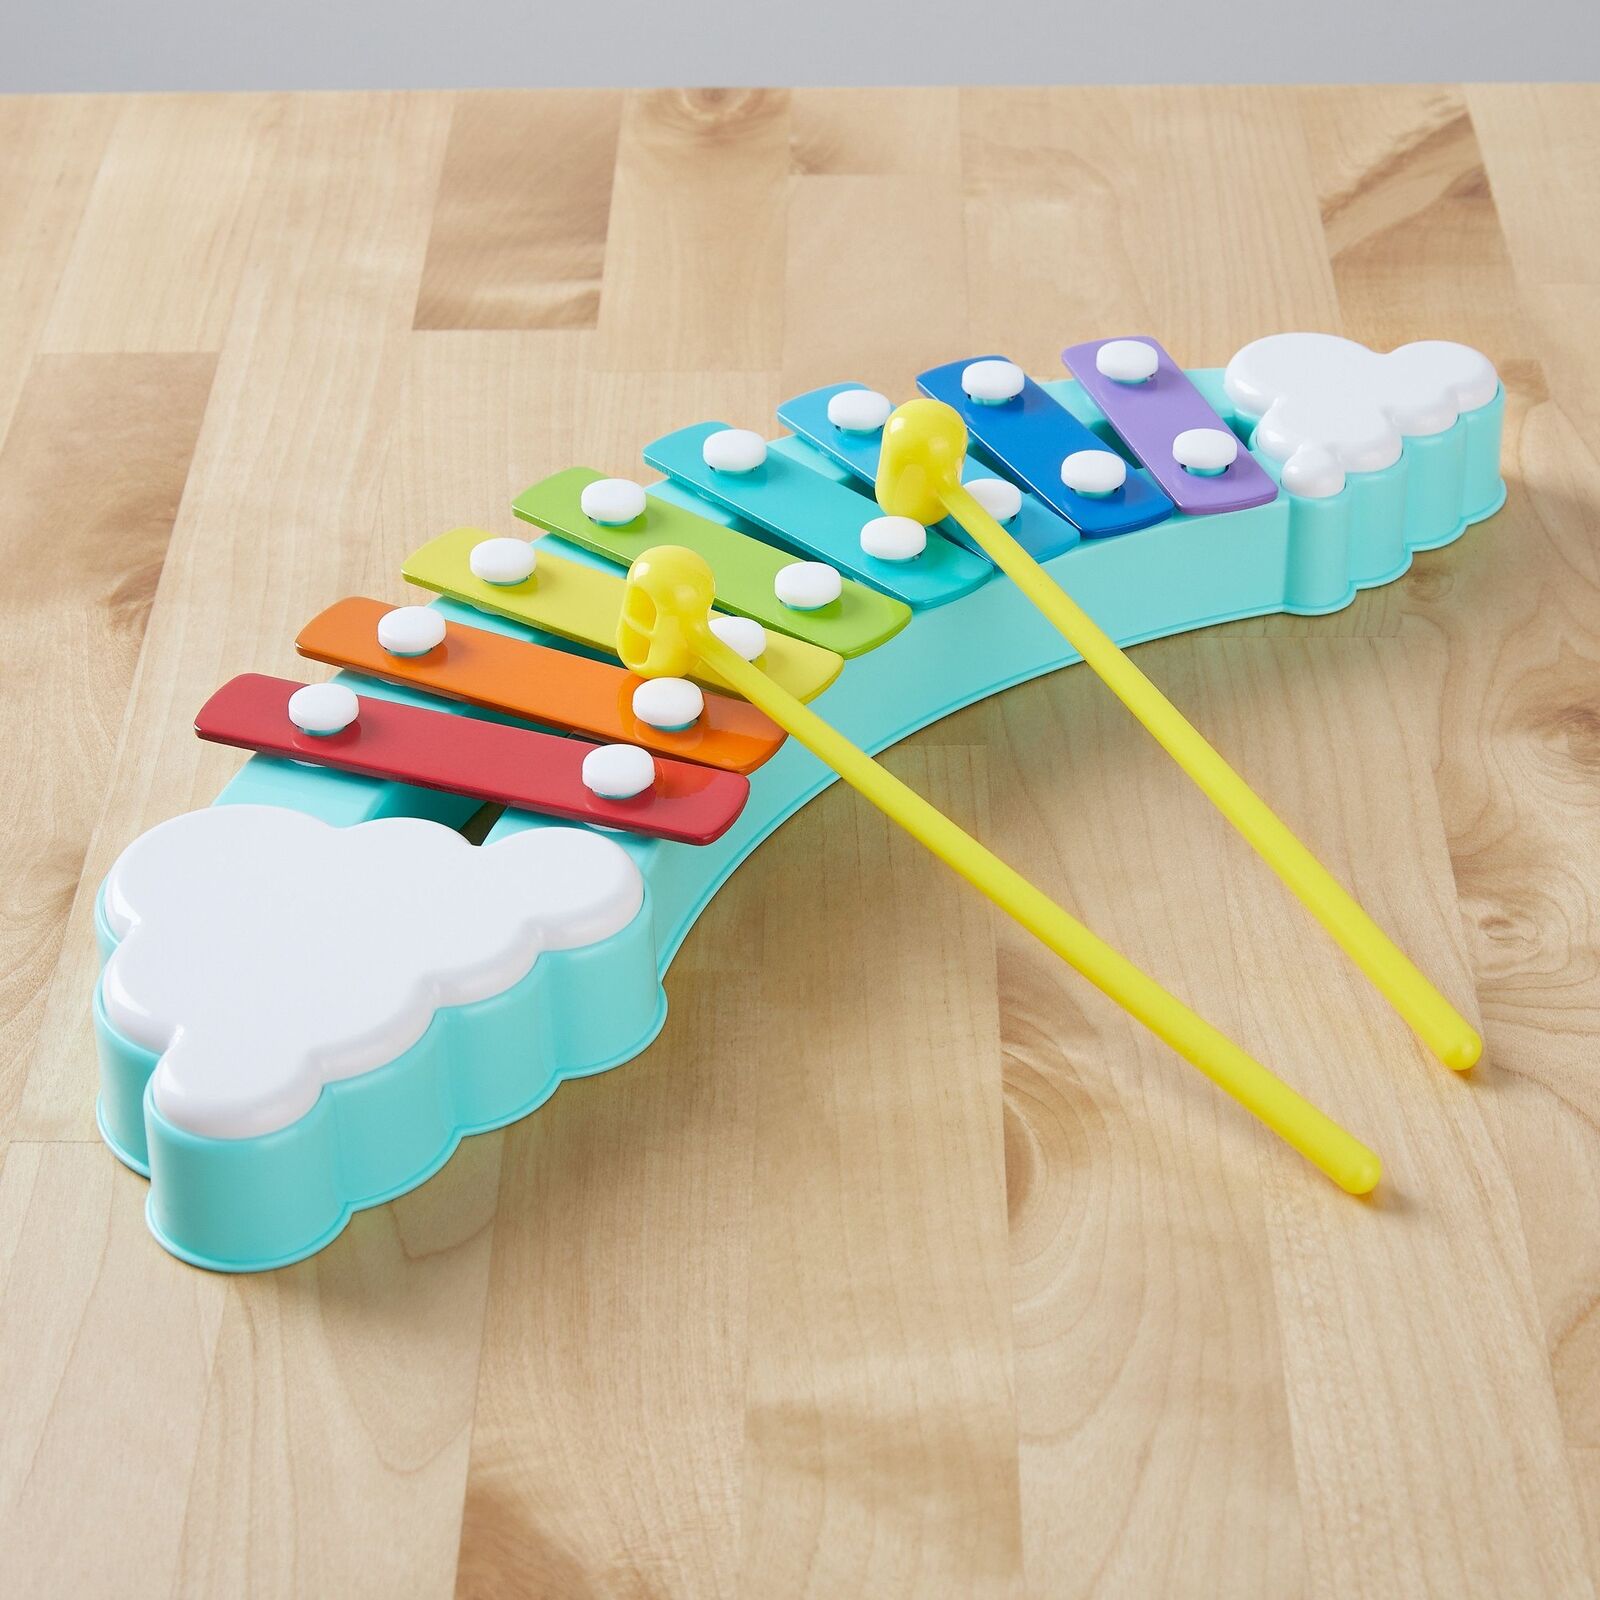 Spark. Create. Imagine. Rainbow Xylophone Musical Toy